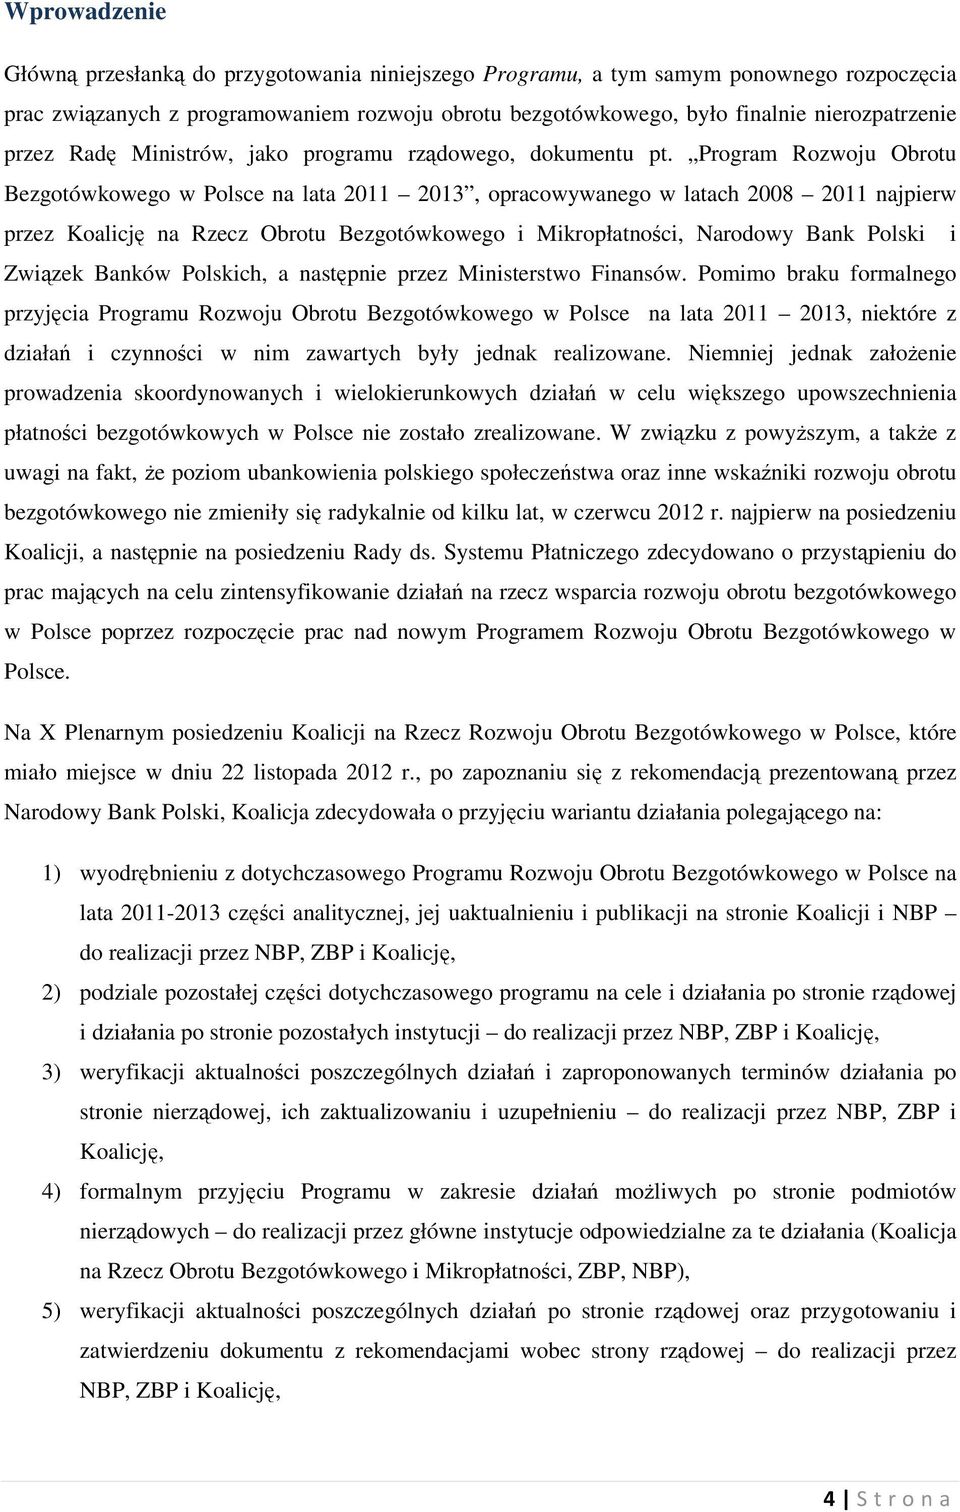 Program Rozwoju Obrotu Bezgotówkowego w Polsce na lata 2011 2013, opracowywanego w latach 2008 2011 najpierw przez Koalicję na Rzecz Obrotu Bezgotówkowego i Mikropłatności, Narodowy Bank Polski i